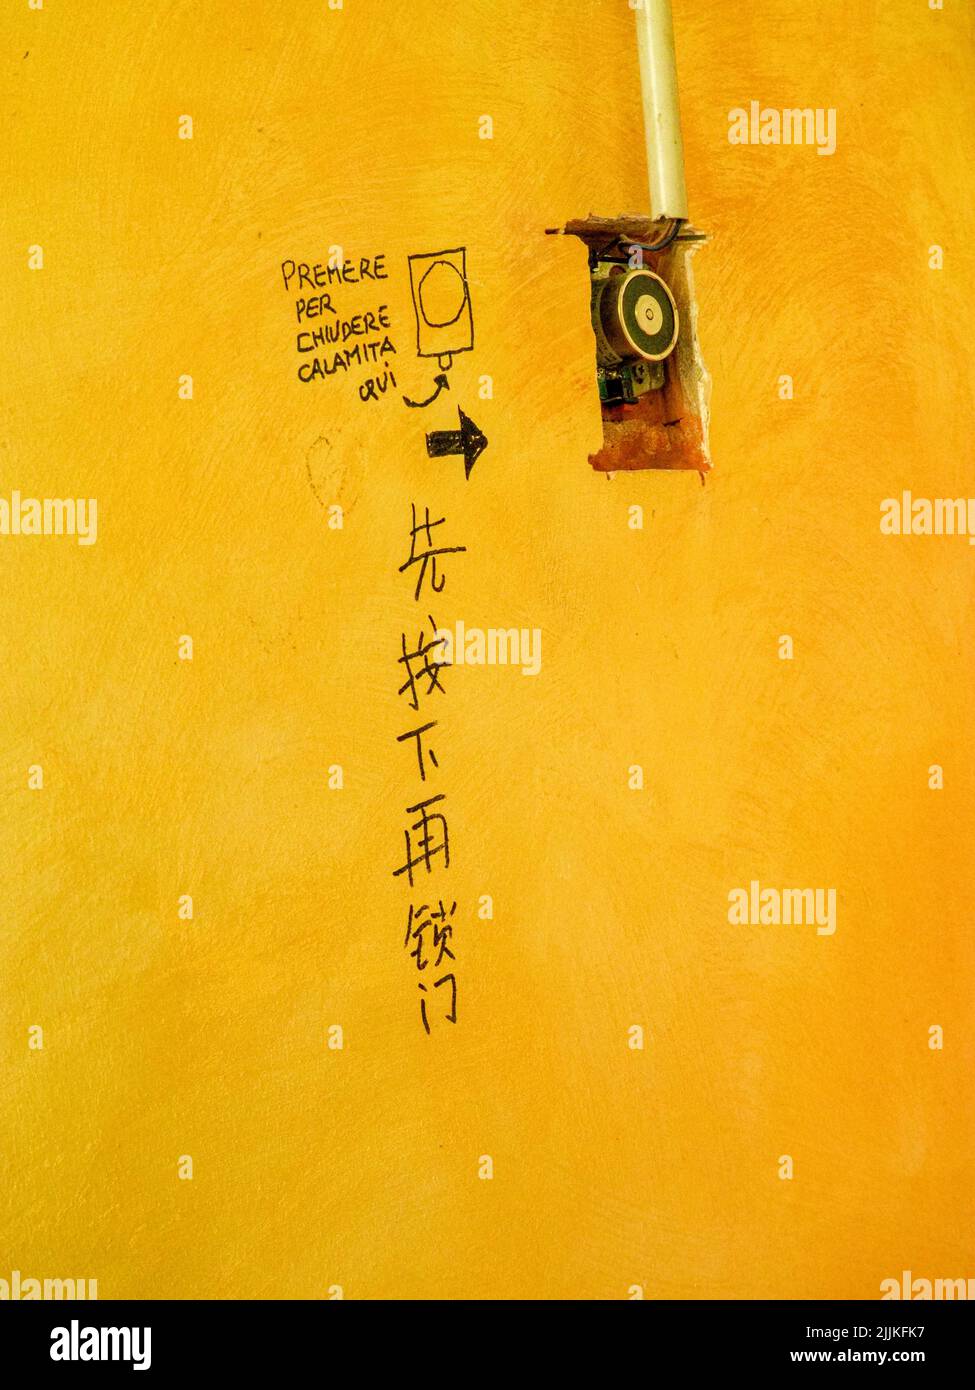 Un cliché vertical d'un script chinois sur le mur jaune près d'un interrupteur à Milan, en Italie Banque D'Images